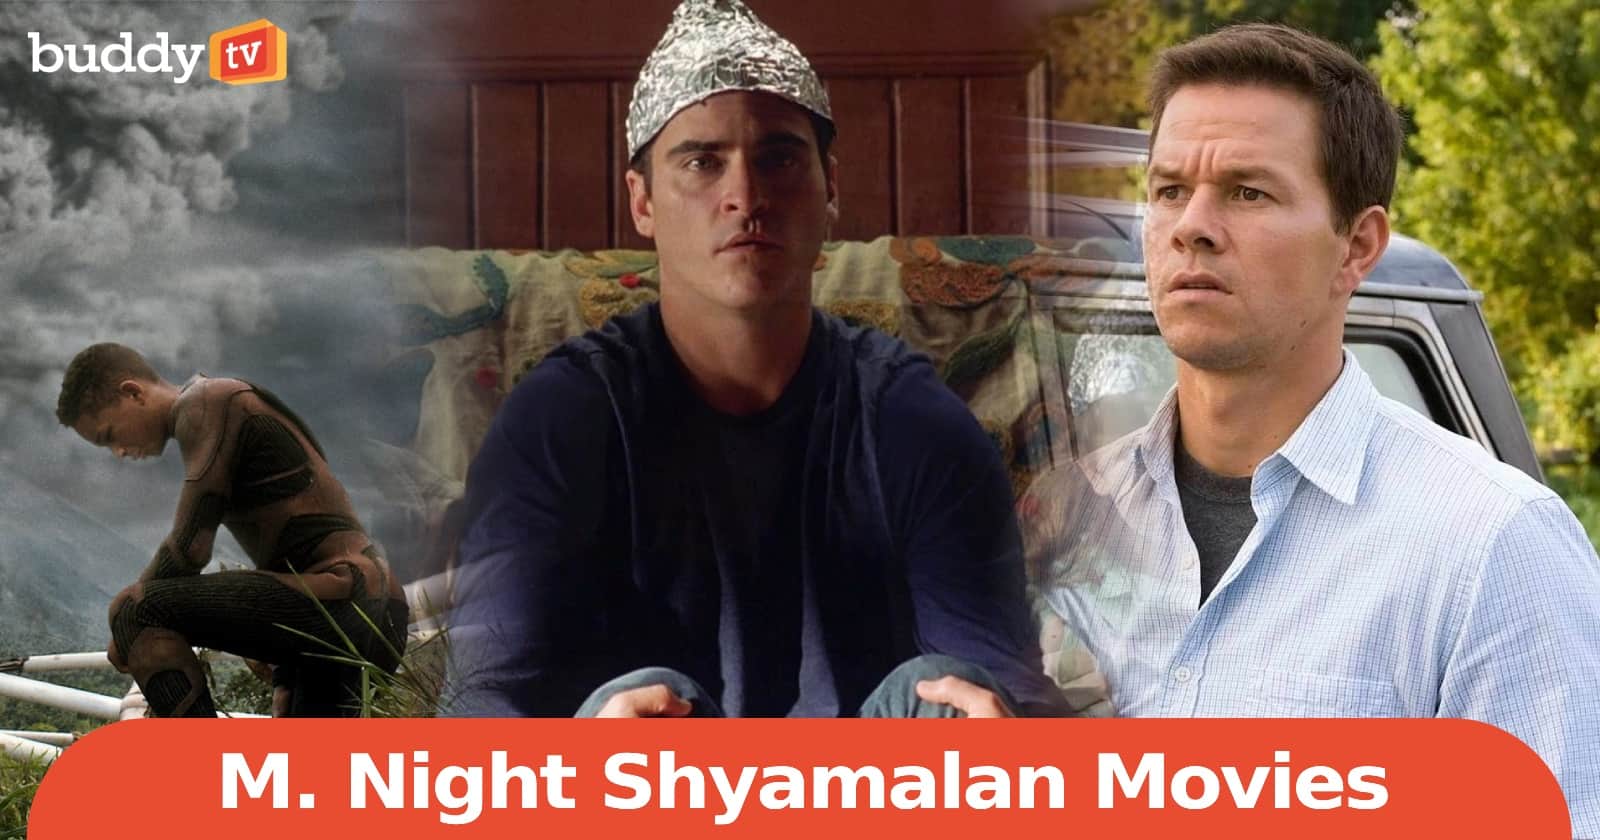 The Mystery of M. Night Shyamalan